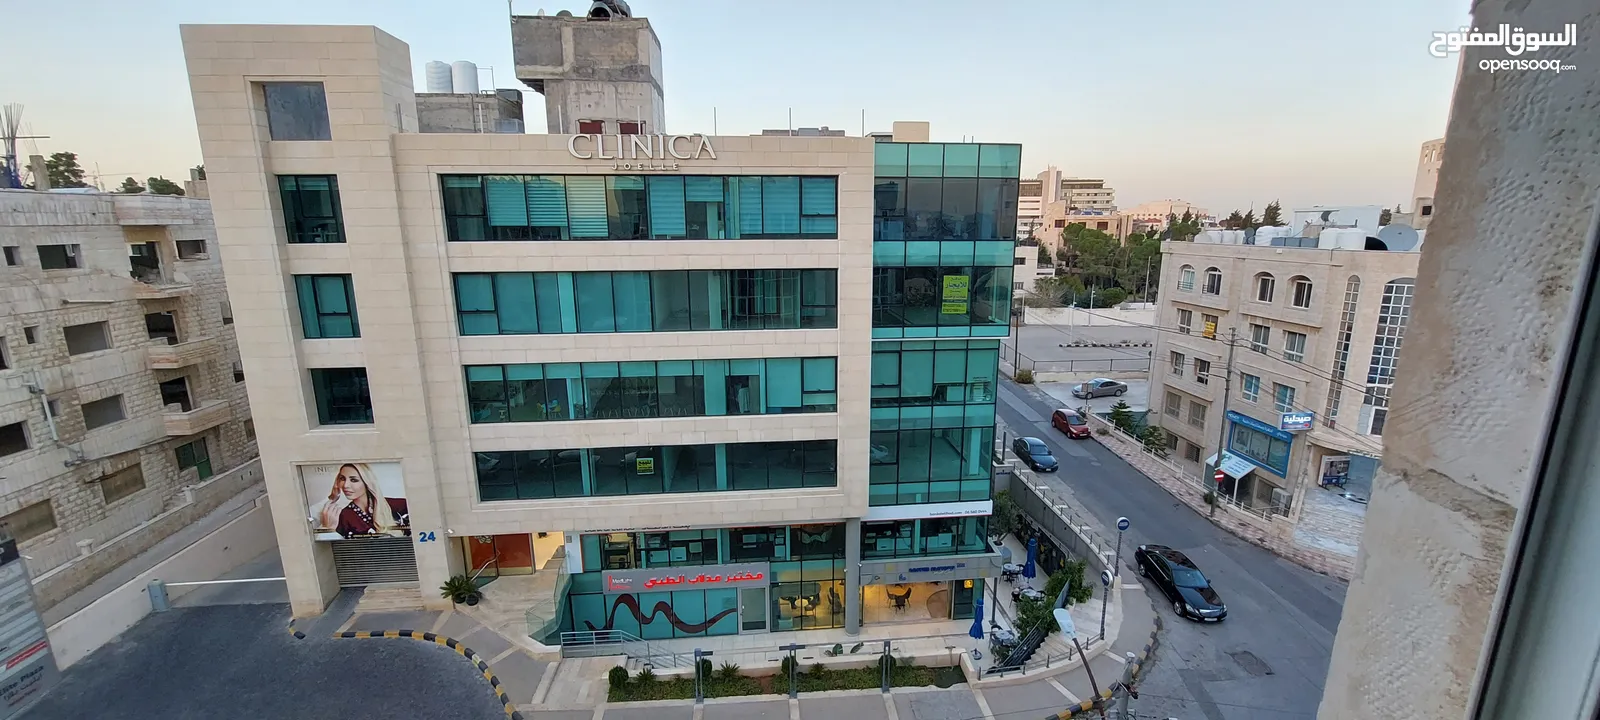 مكتب يصلح عياده للايجار بمساحه 70 متر، جبل عمان بجانب مستشفى فرح وبالقرب من مستشفى عبدالهادي